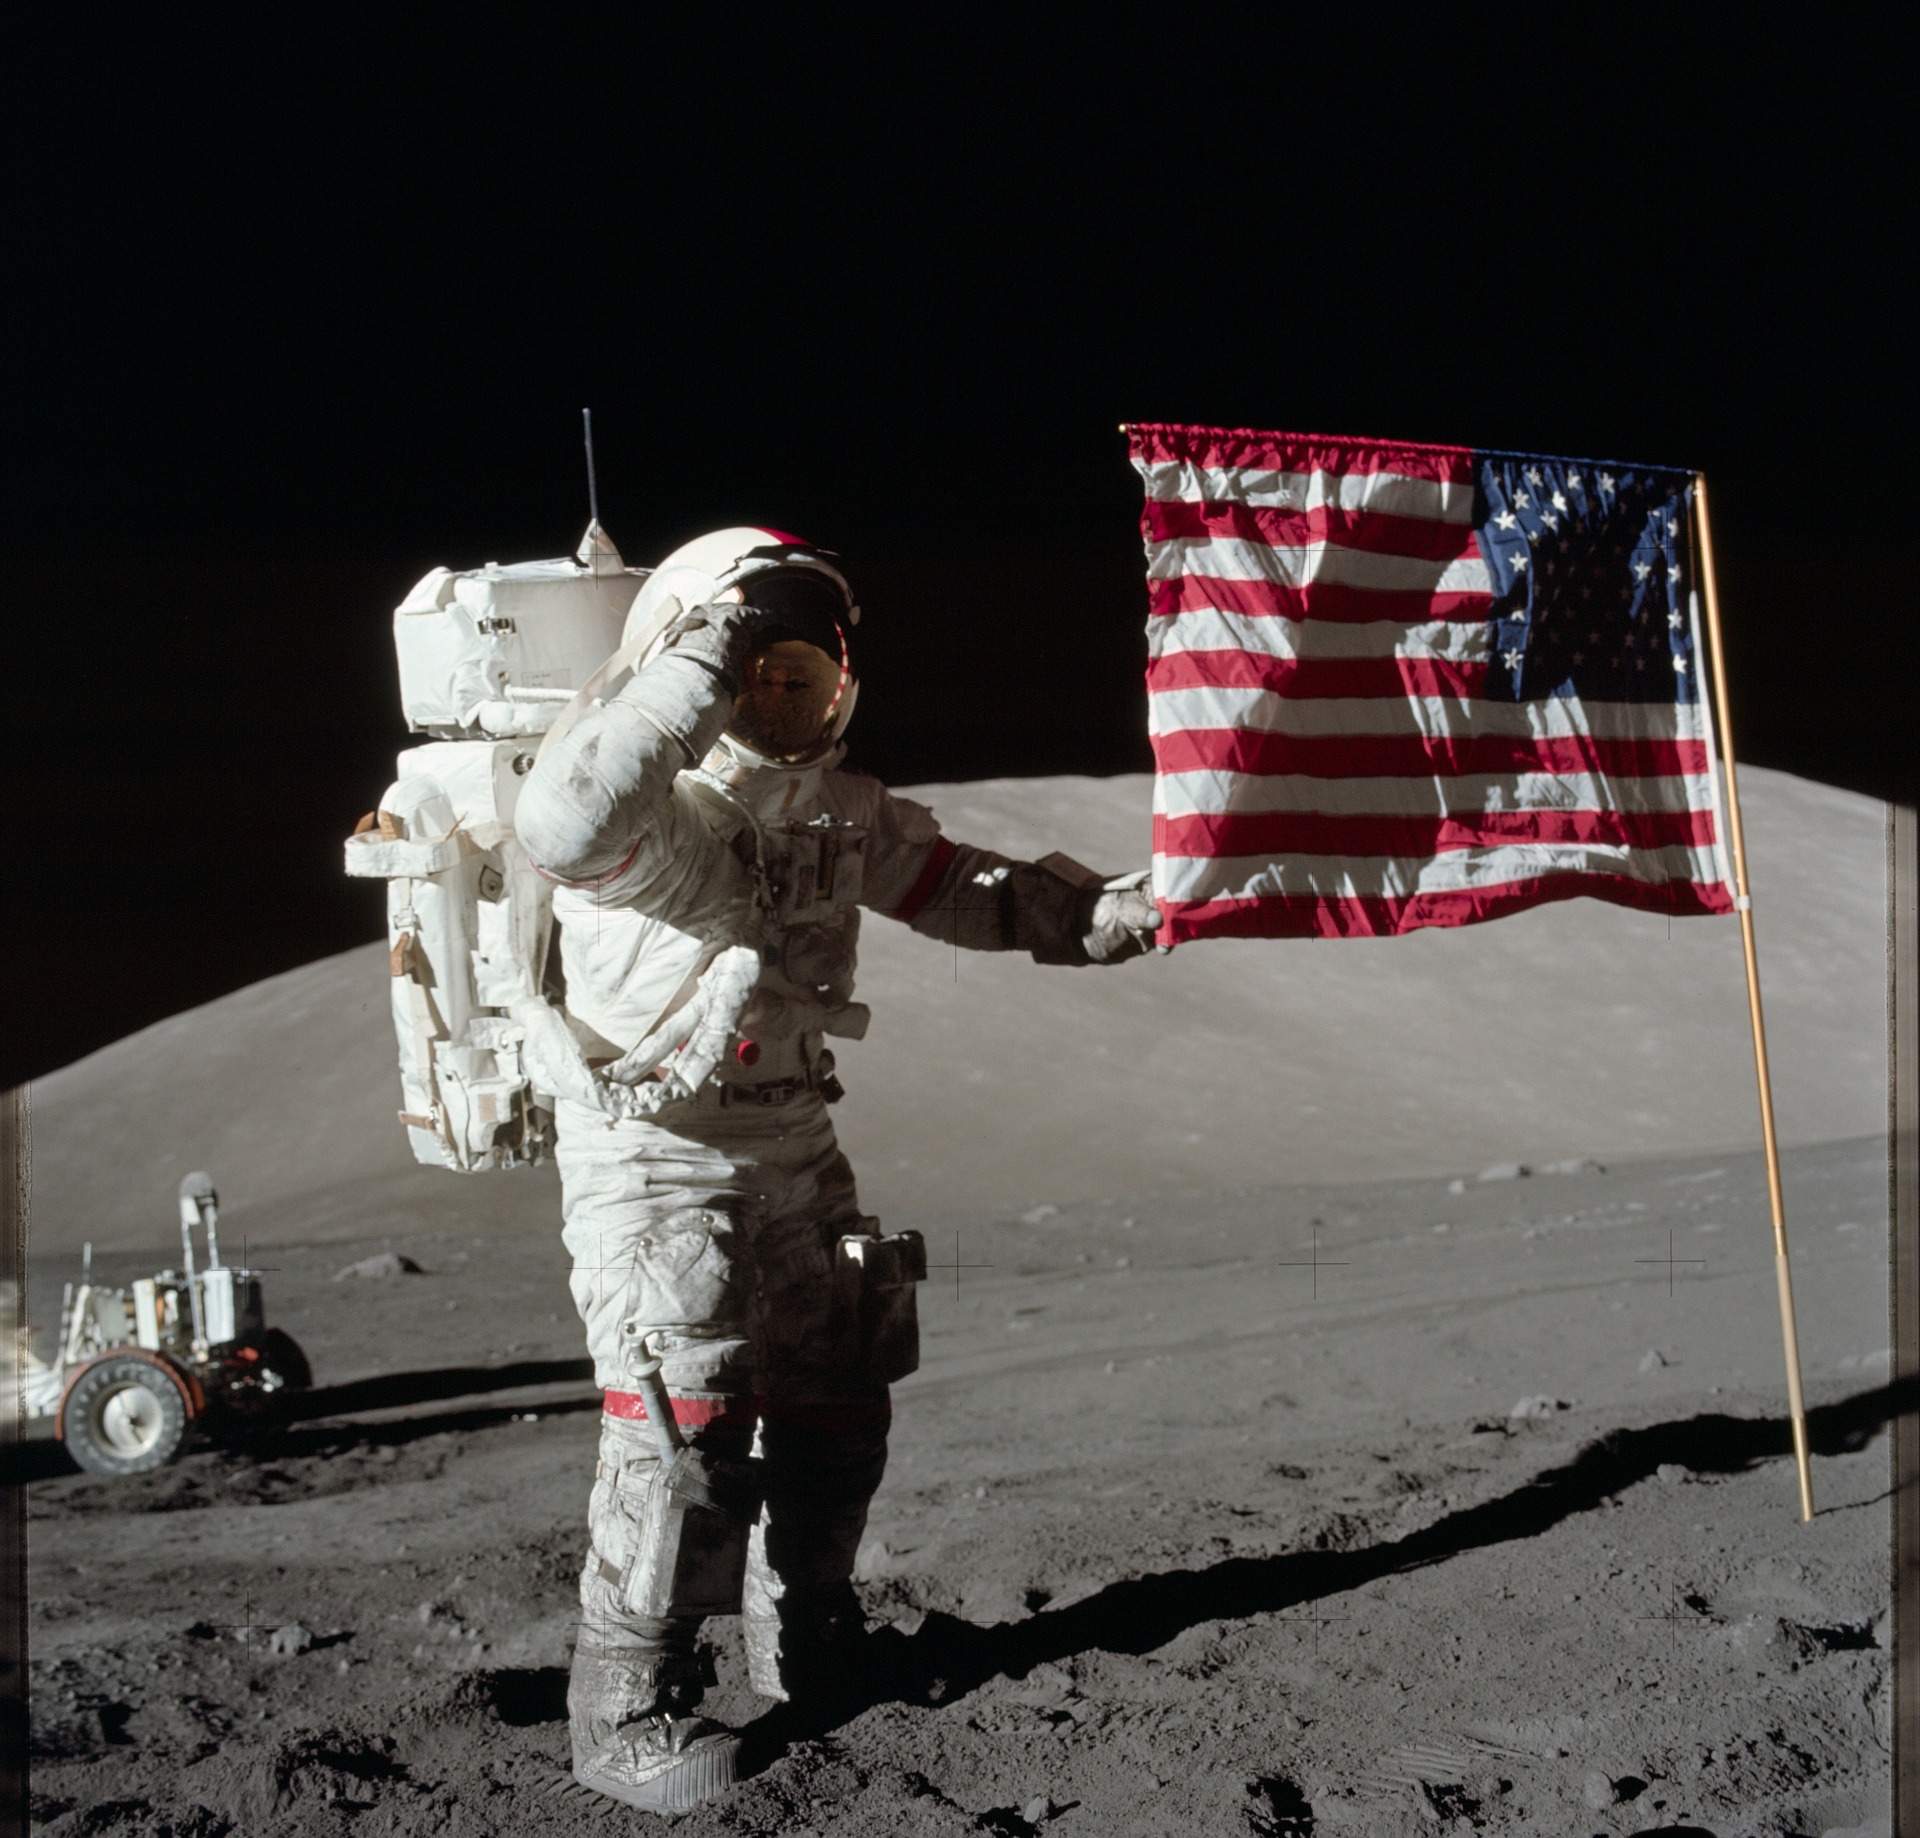 Astronaut on the moon photo